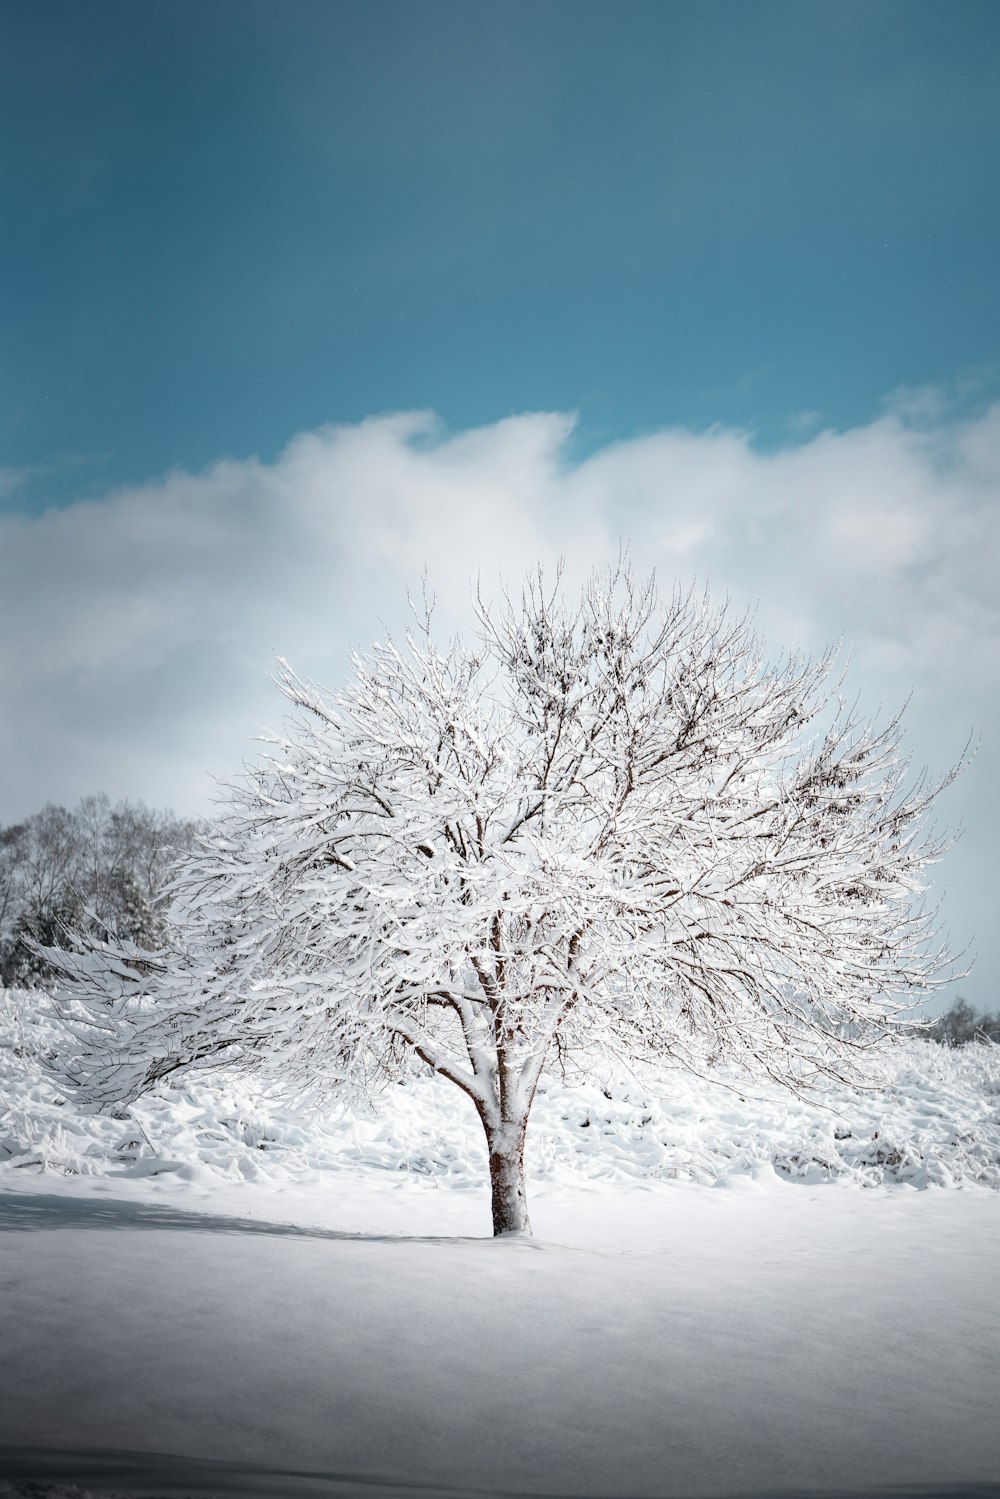 albero senza foglie coperto di neve